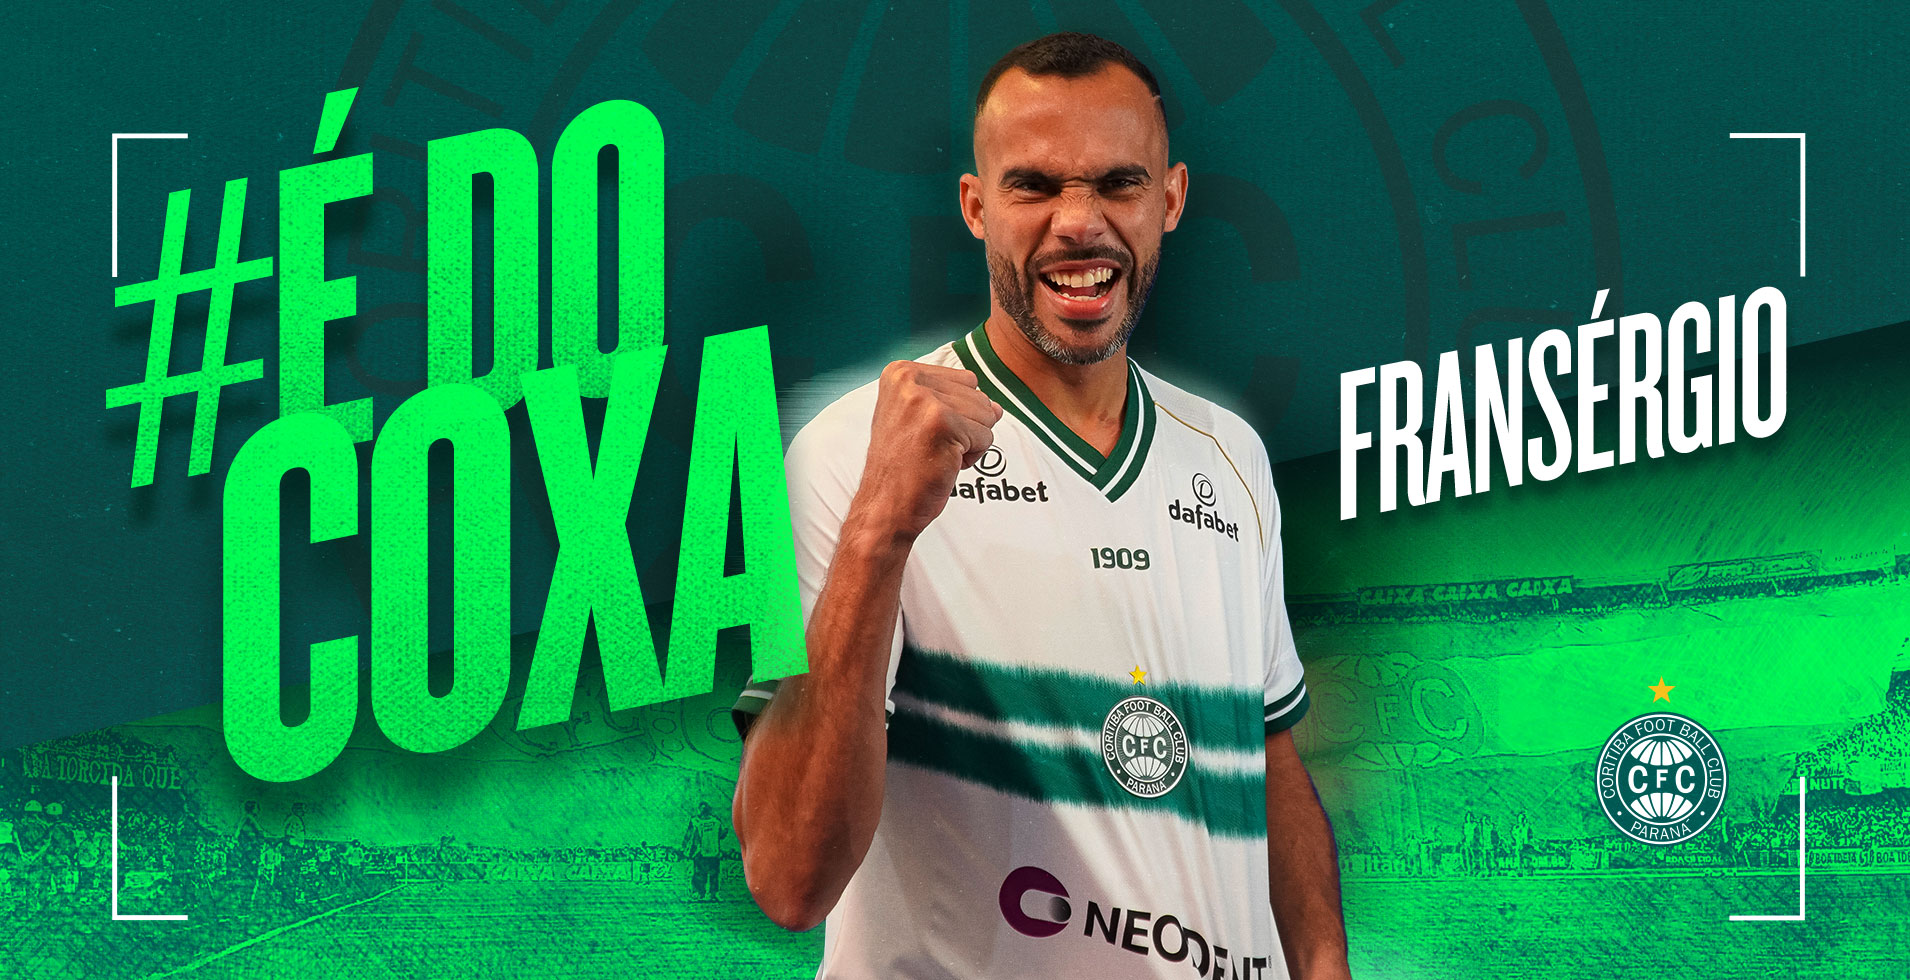 Fransérgio chega com contrato até 2026 (Foto: Divulgação/Coritiba)